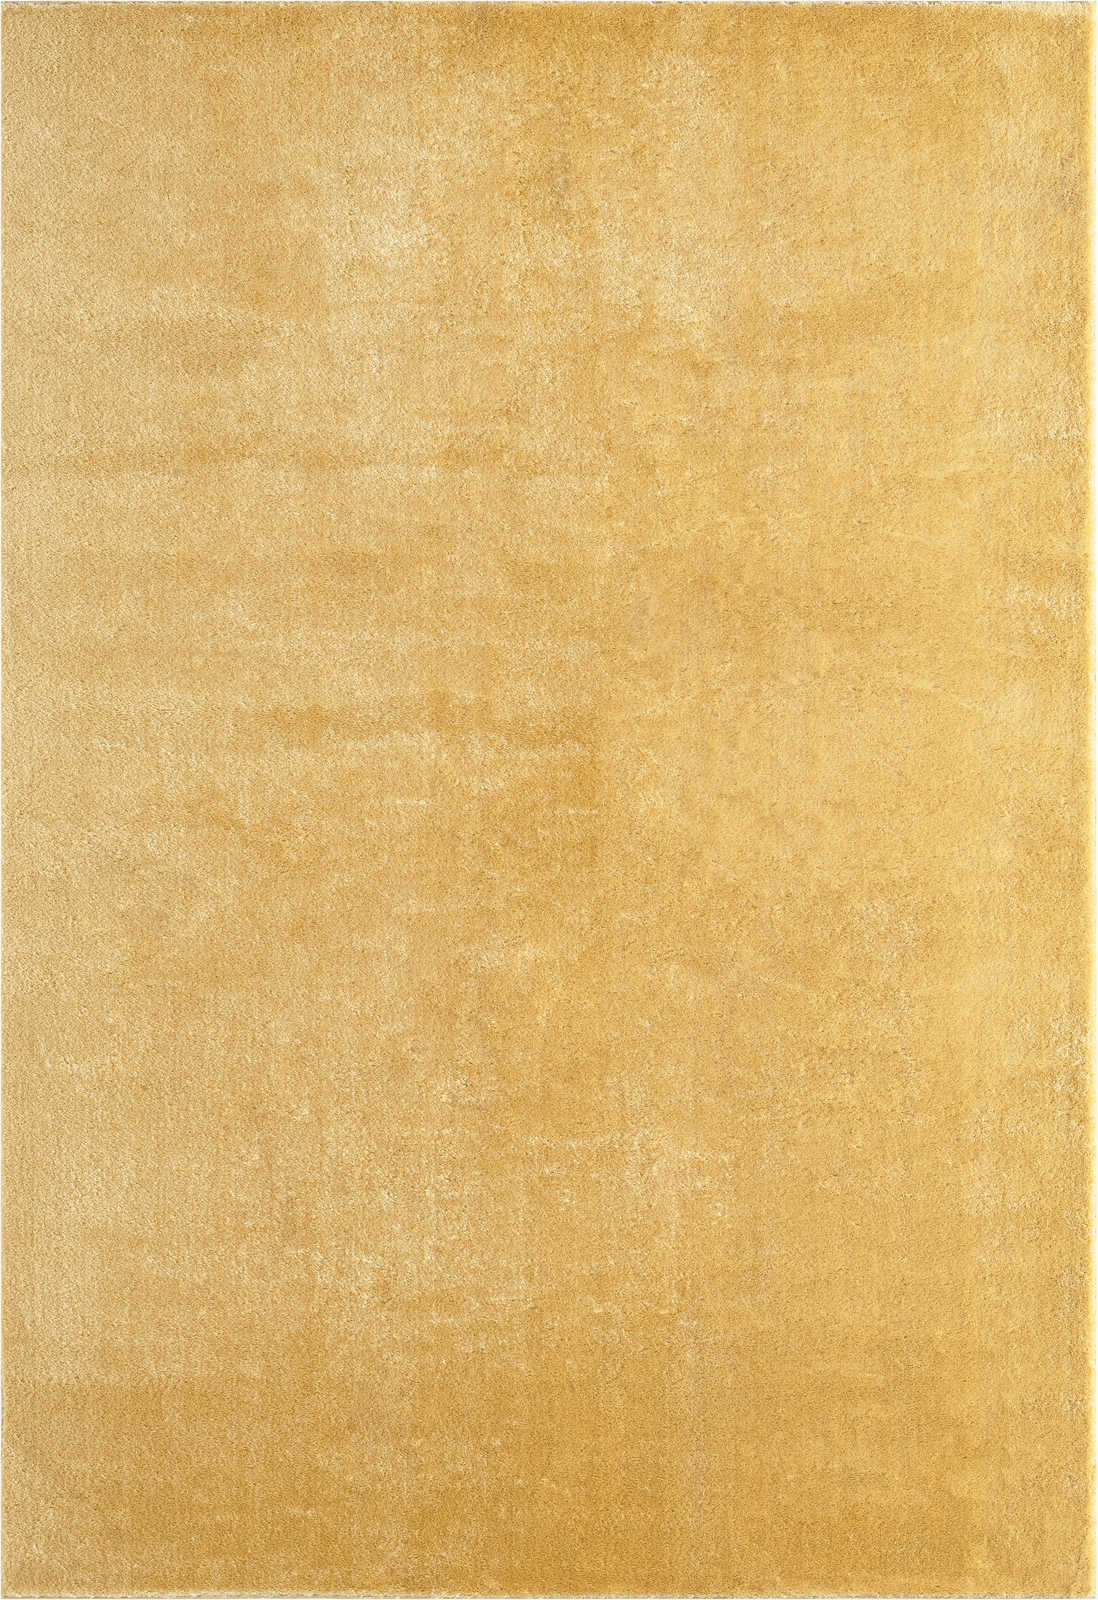             Kuschelweicher Hochflor Teppich in Gold – 110 x 60 cm
        